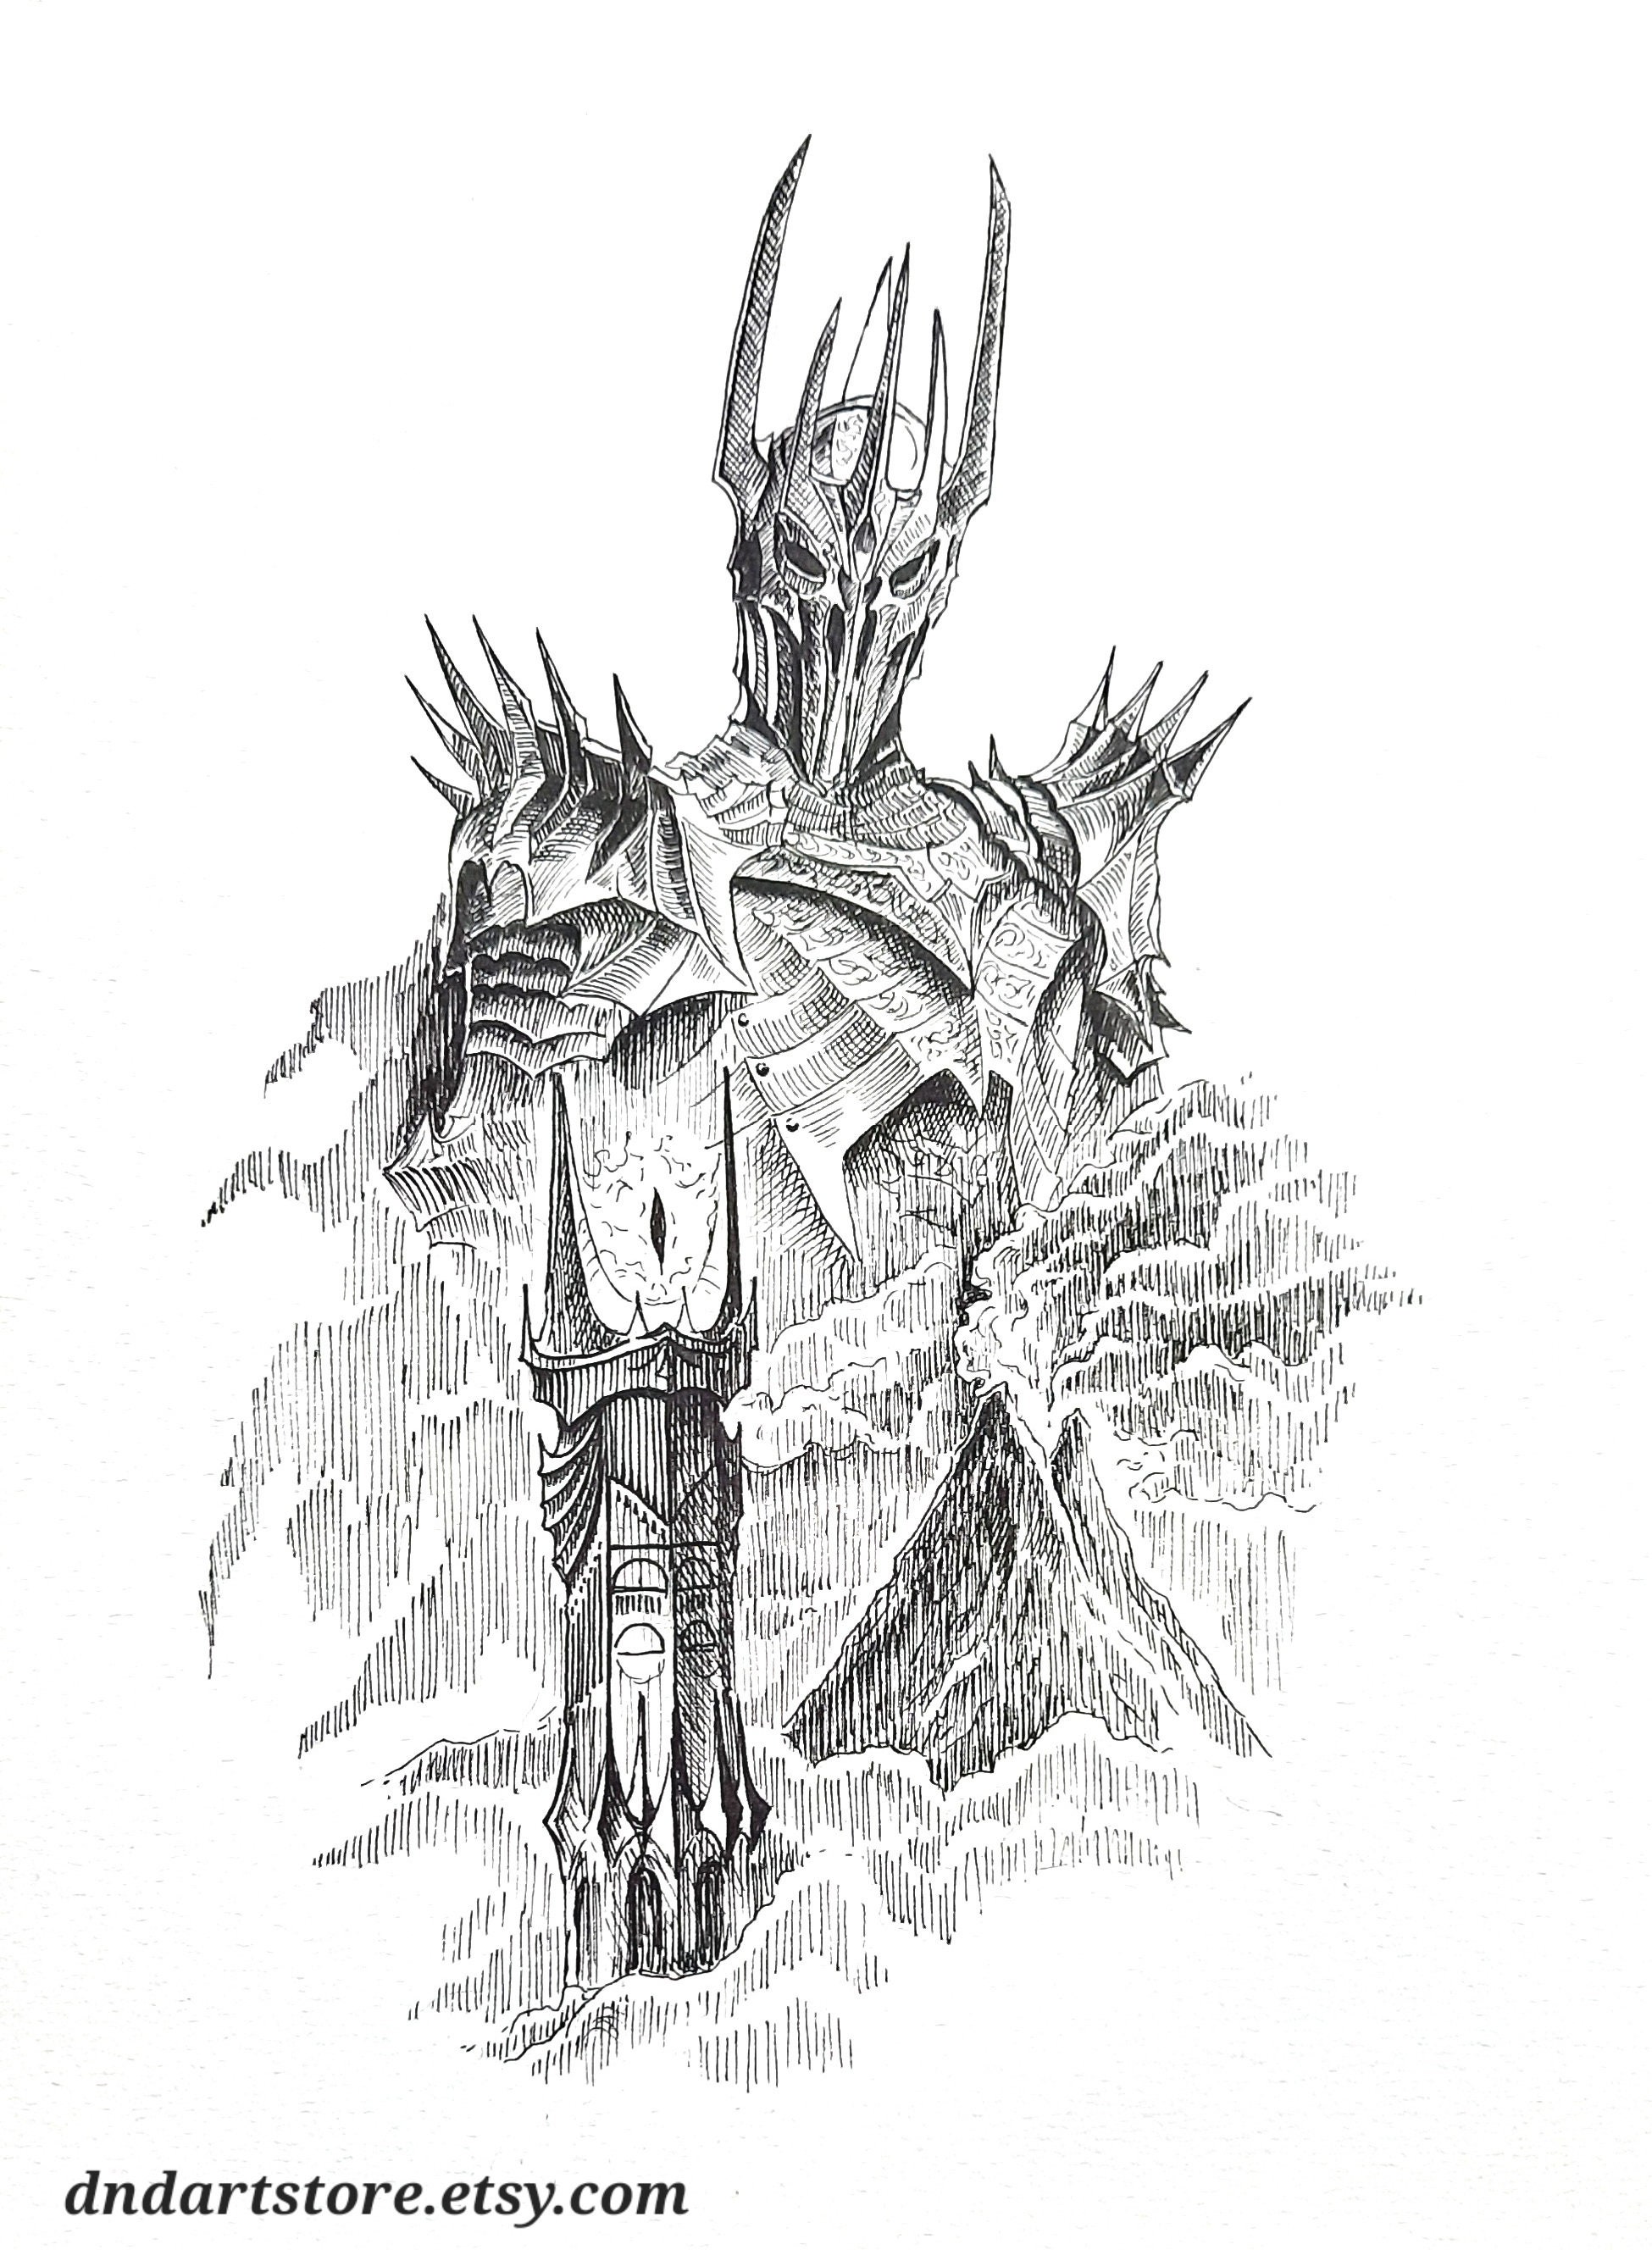 The Teeth of Mordor Original Art Sketchbook Page J. R. R. Tolkien